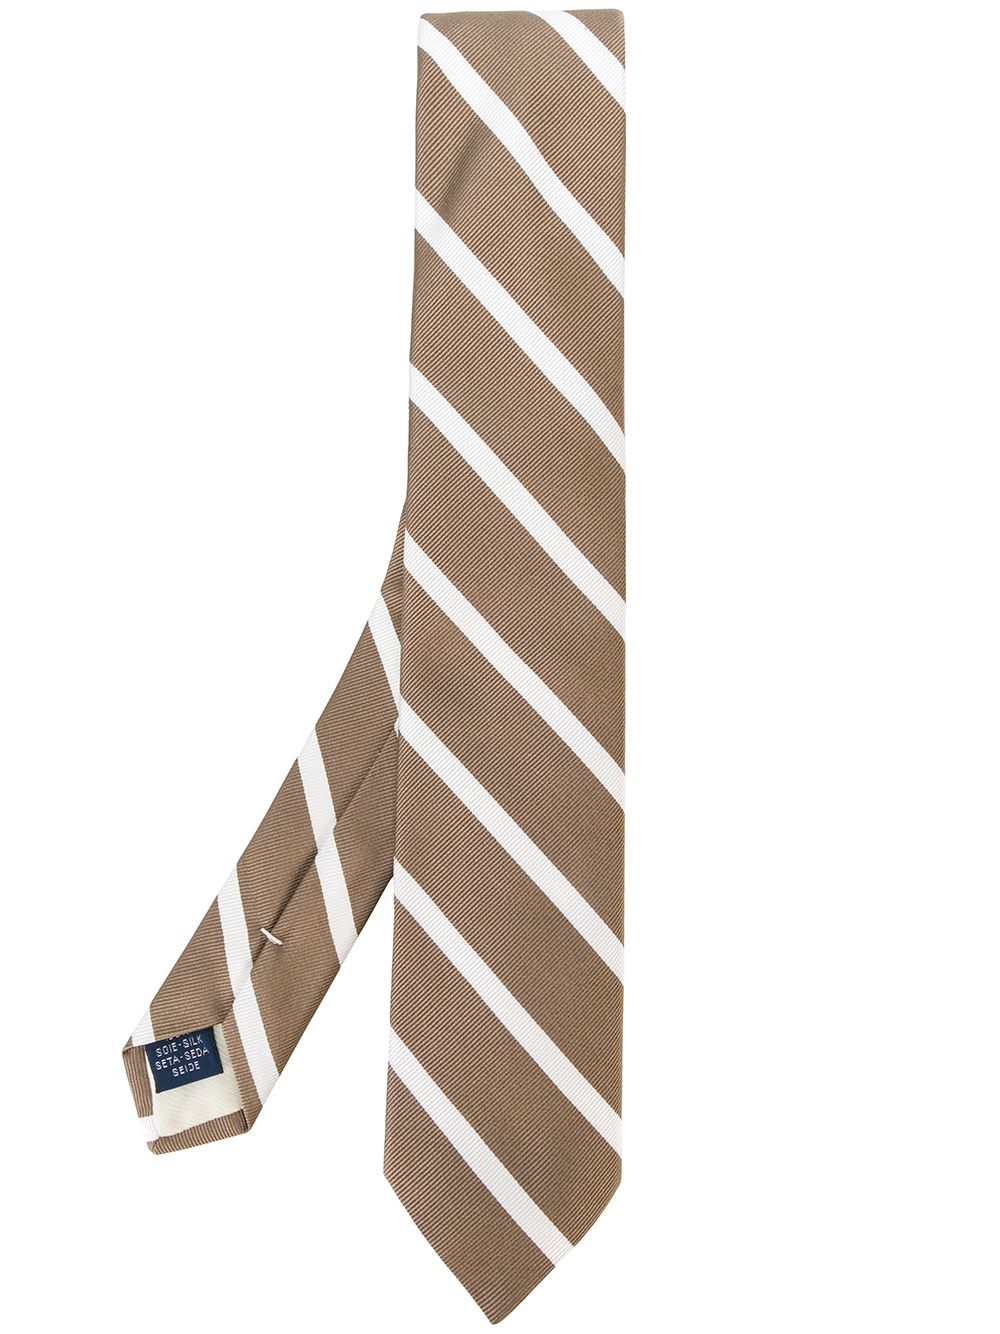 Strip ties